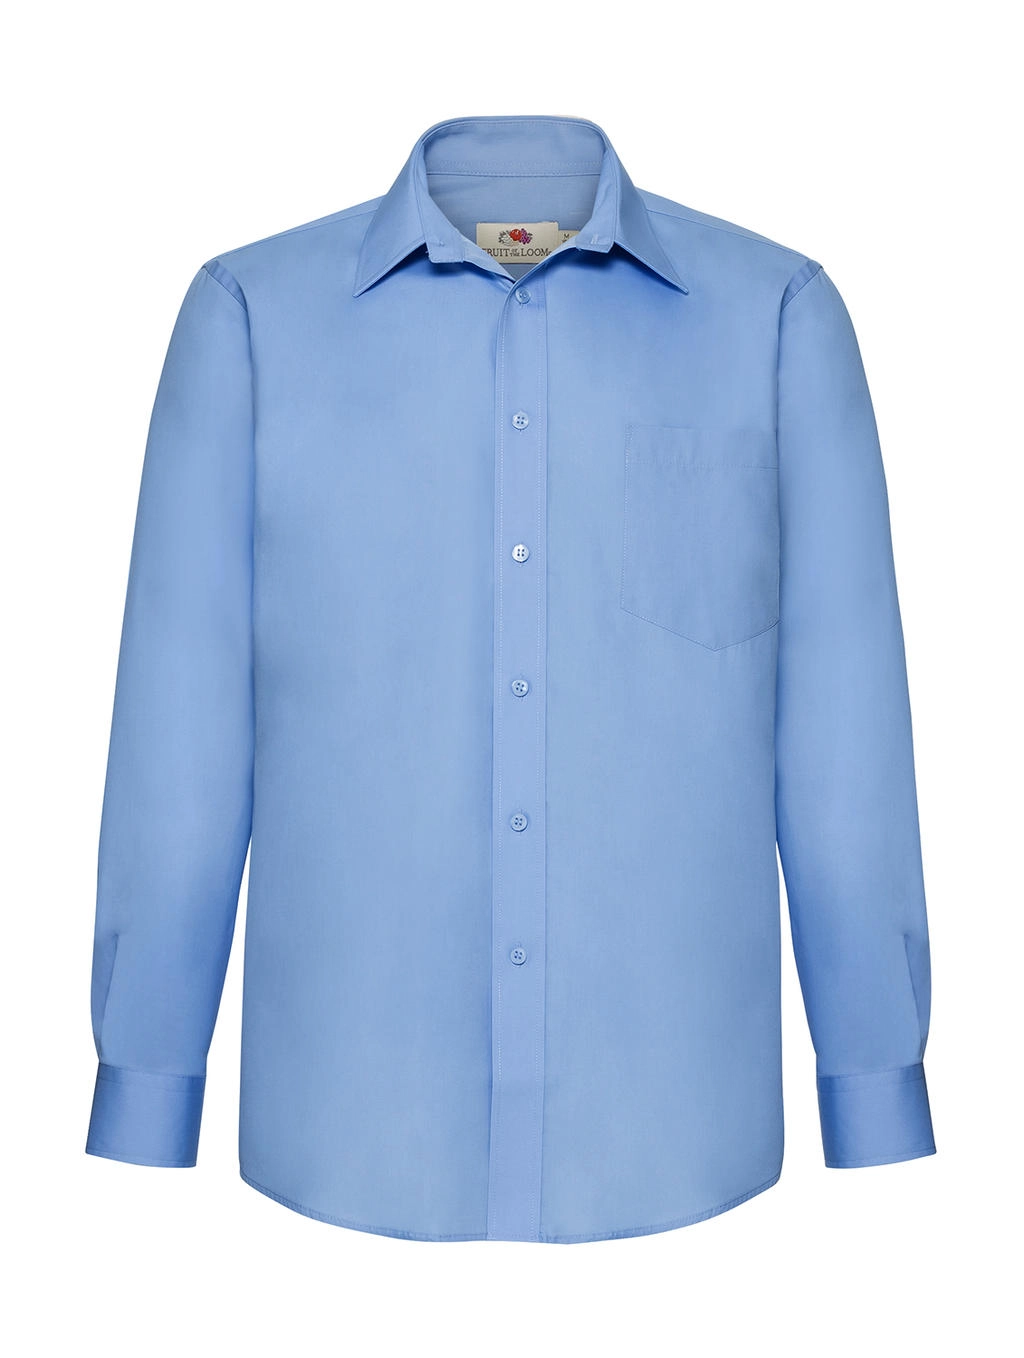 Poplin Shirt LS zum Besticken und Bedrucken in der Farbe Mid Blue mit Ihren Logo, Schriftzug oder Motiv.